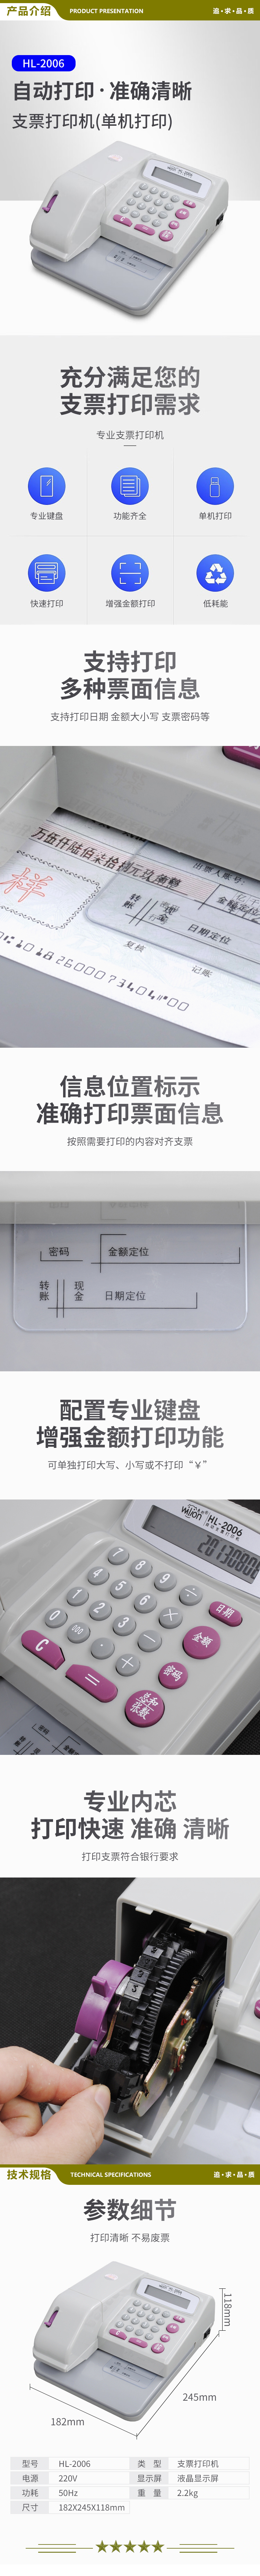 惠朗 huilang HL 2006 自动支票打印机支票打字机 2.jpg